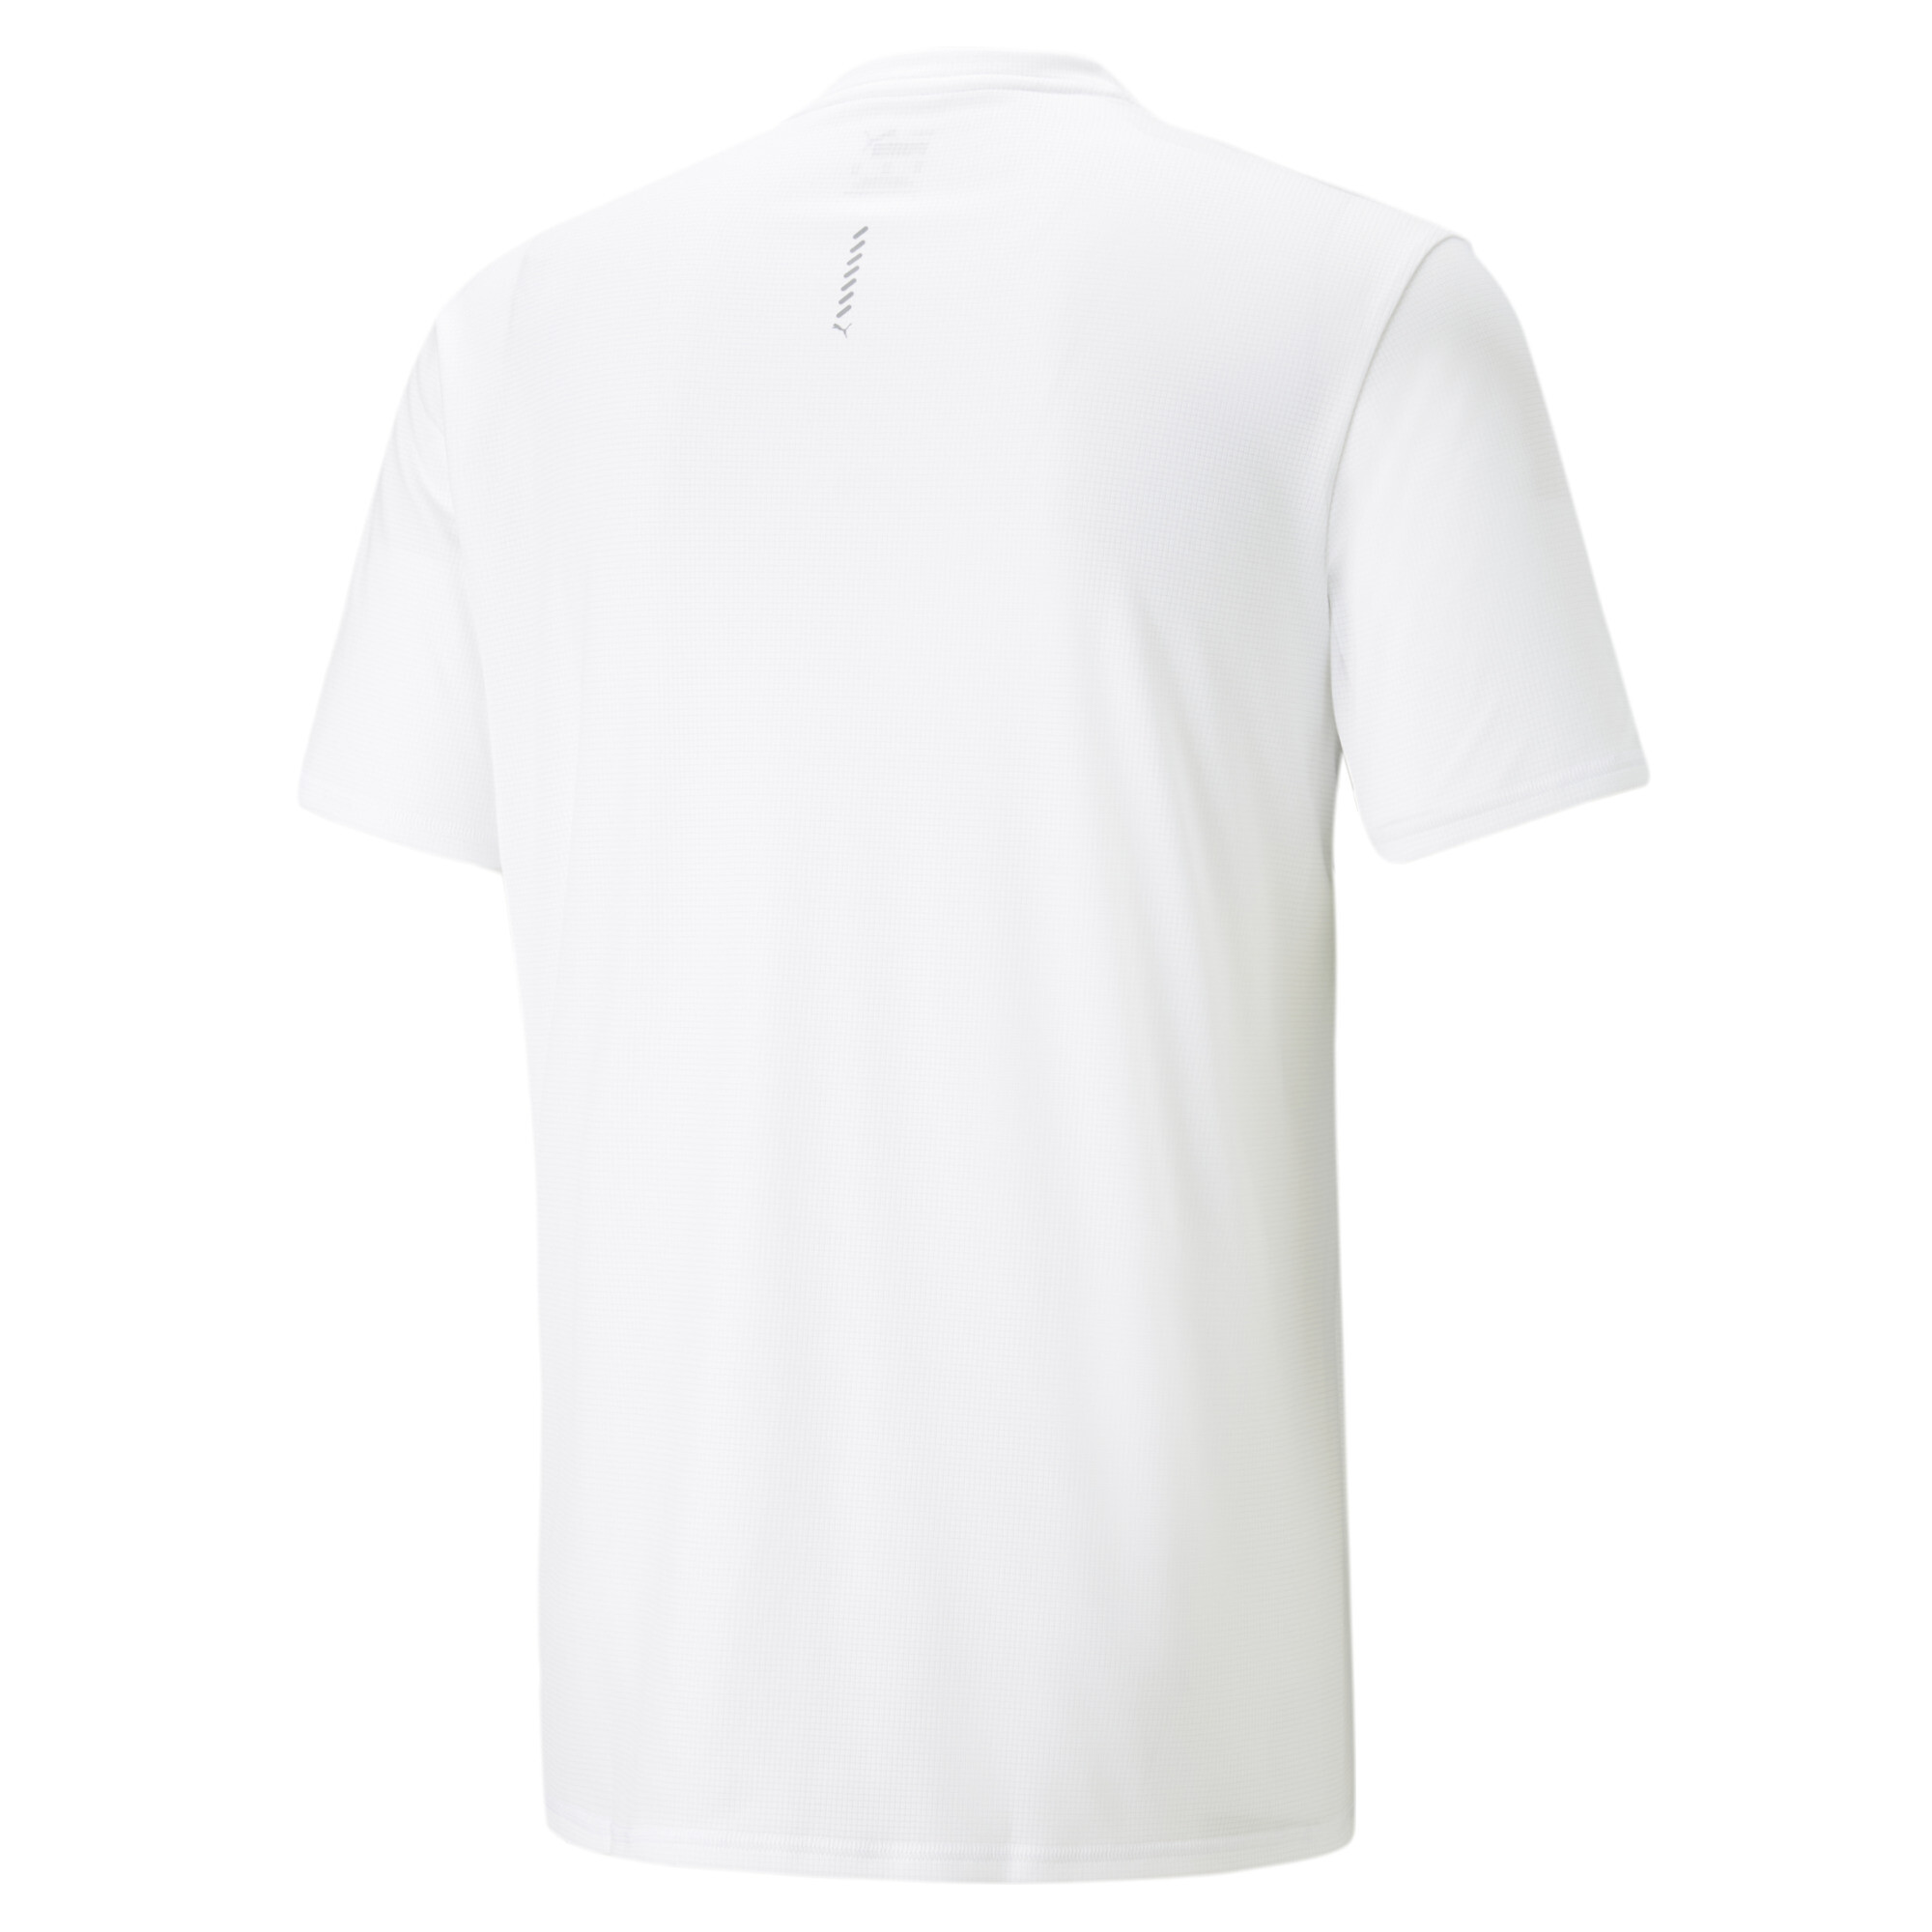 Men's PUMA Run Favourite Printed Running T-Shirt Men In 20 - White, Size Large